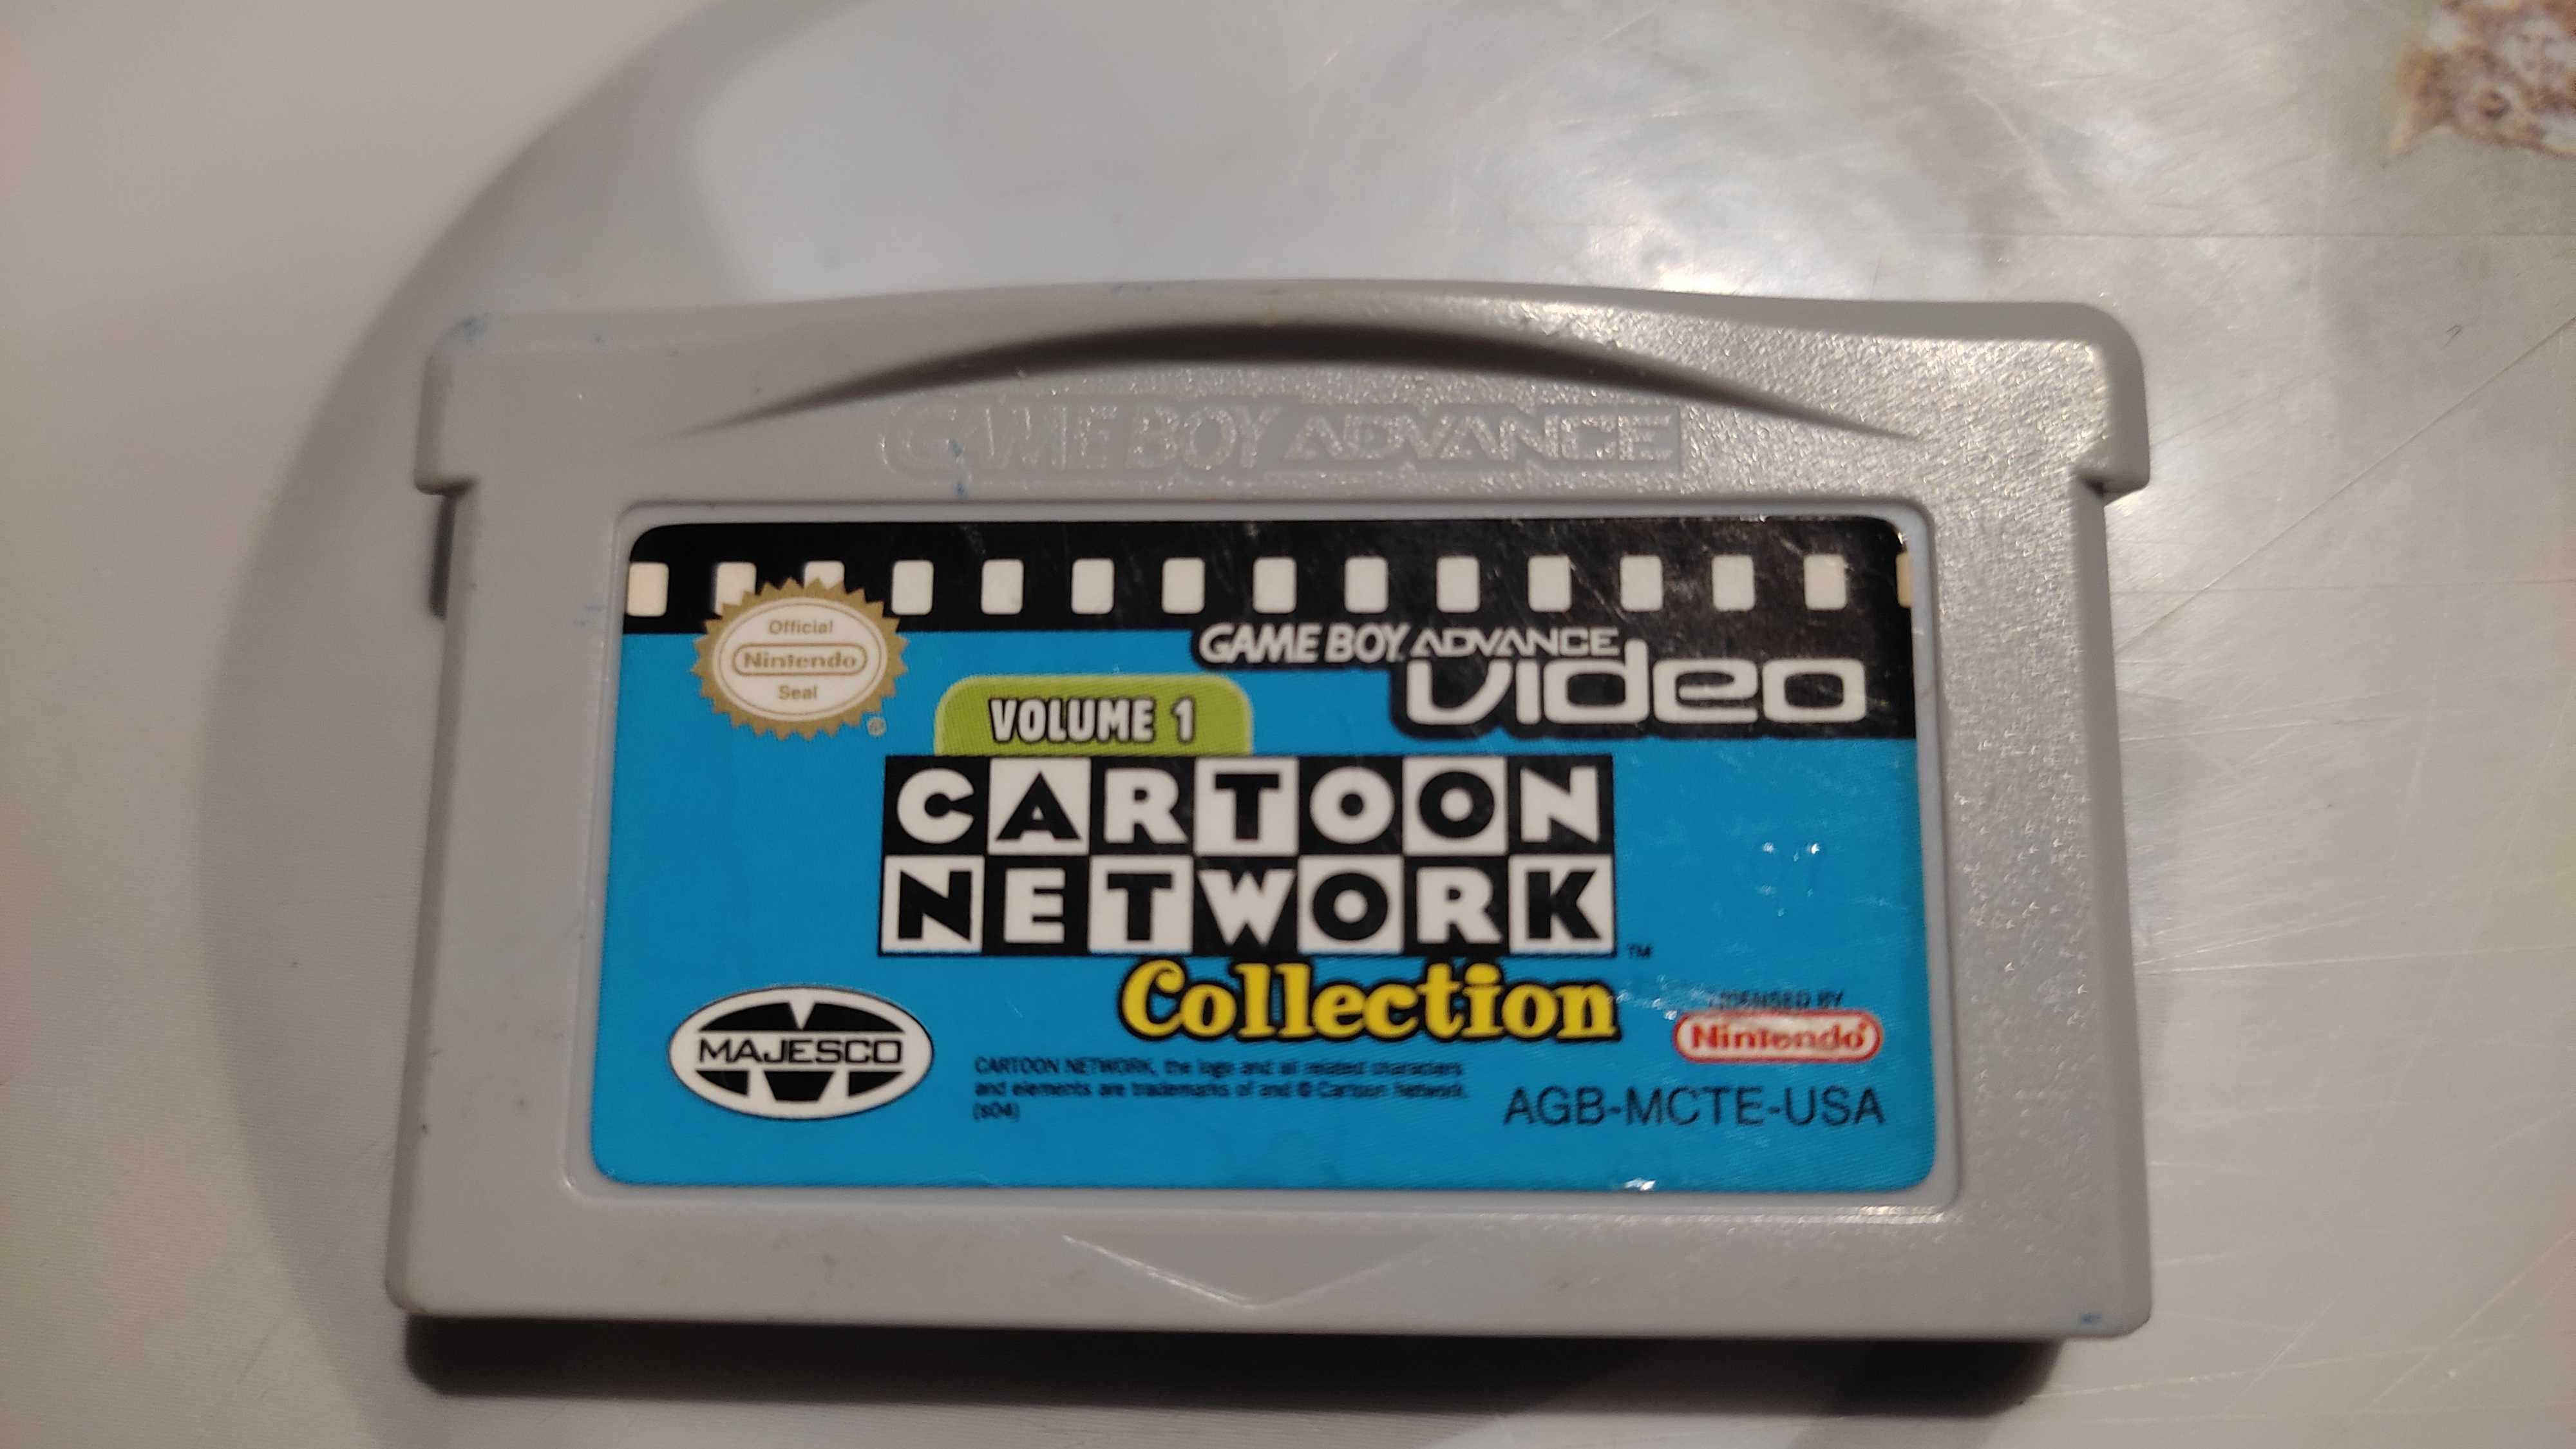 Cattoon Network Collection volume 1- картридж для Game Boy Adwance